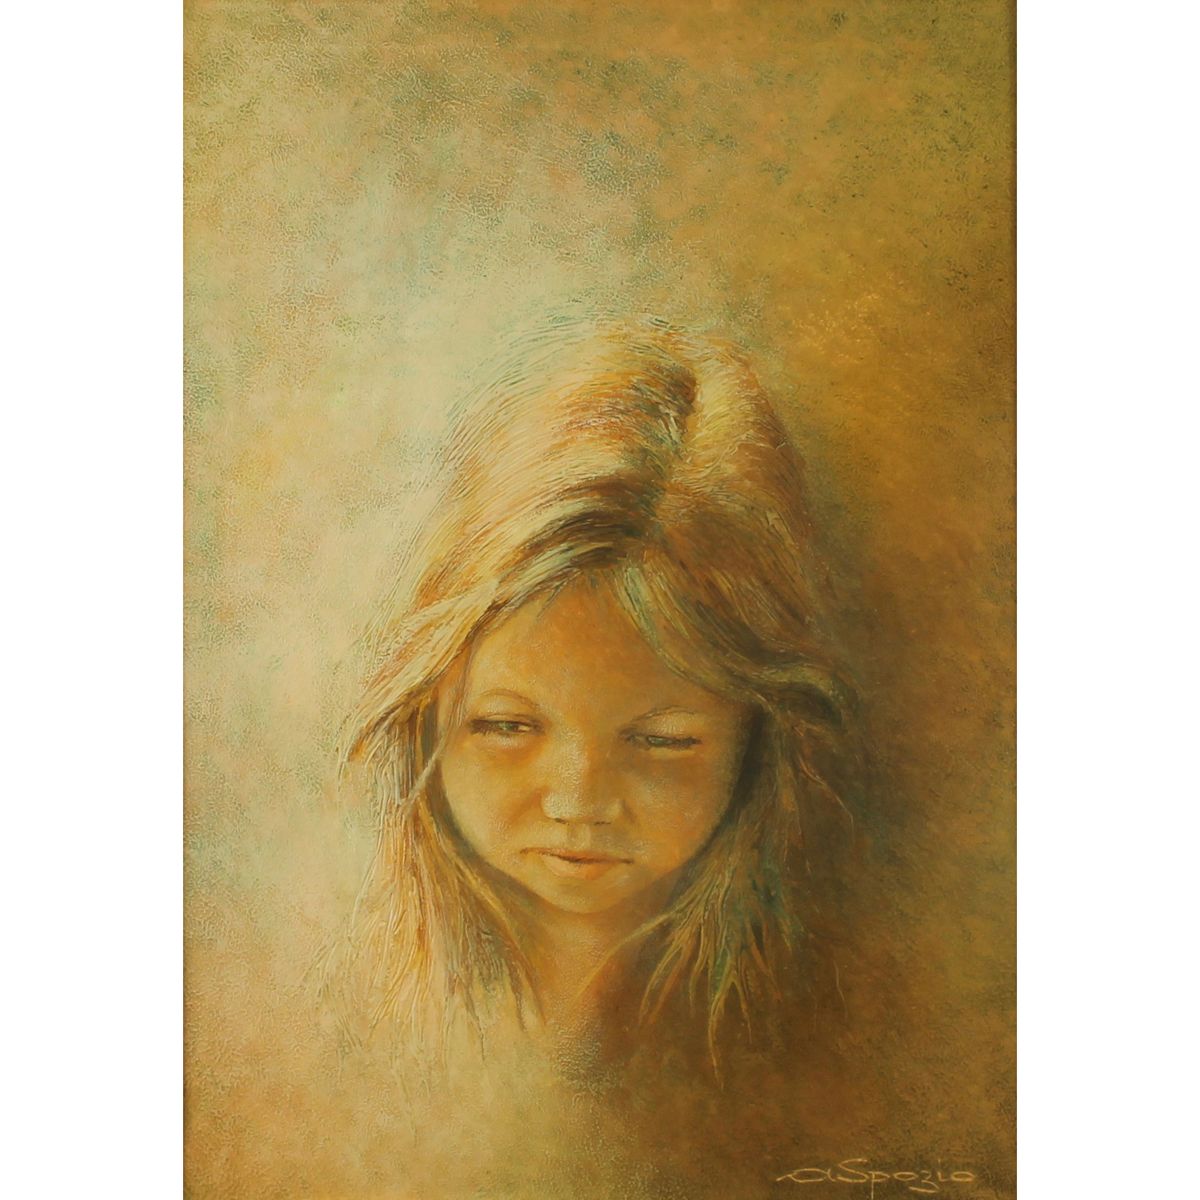 ARTURO SPOZIO (1921) "Volto di ragazza" - "Girl's face" Oil painting on canvas i&hellip;